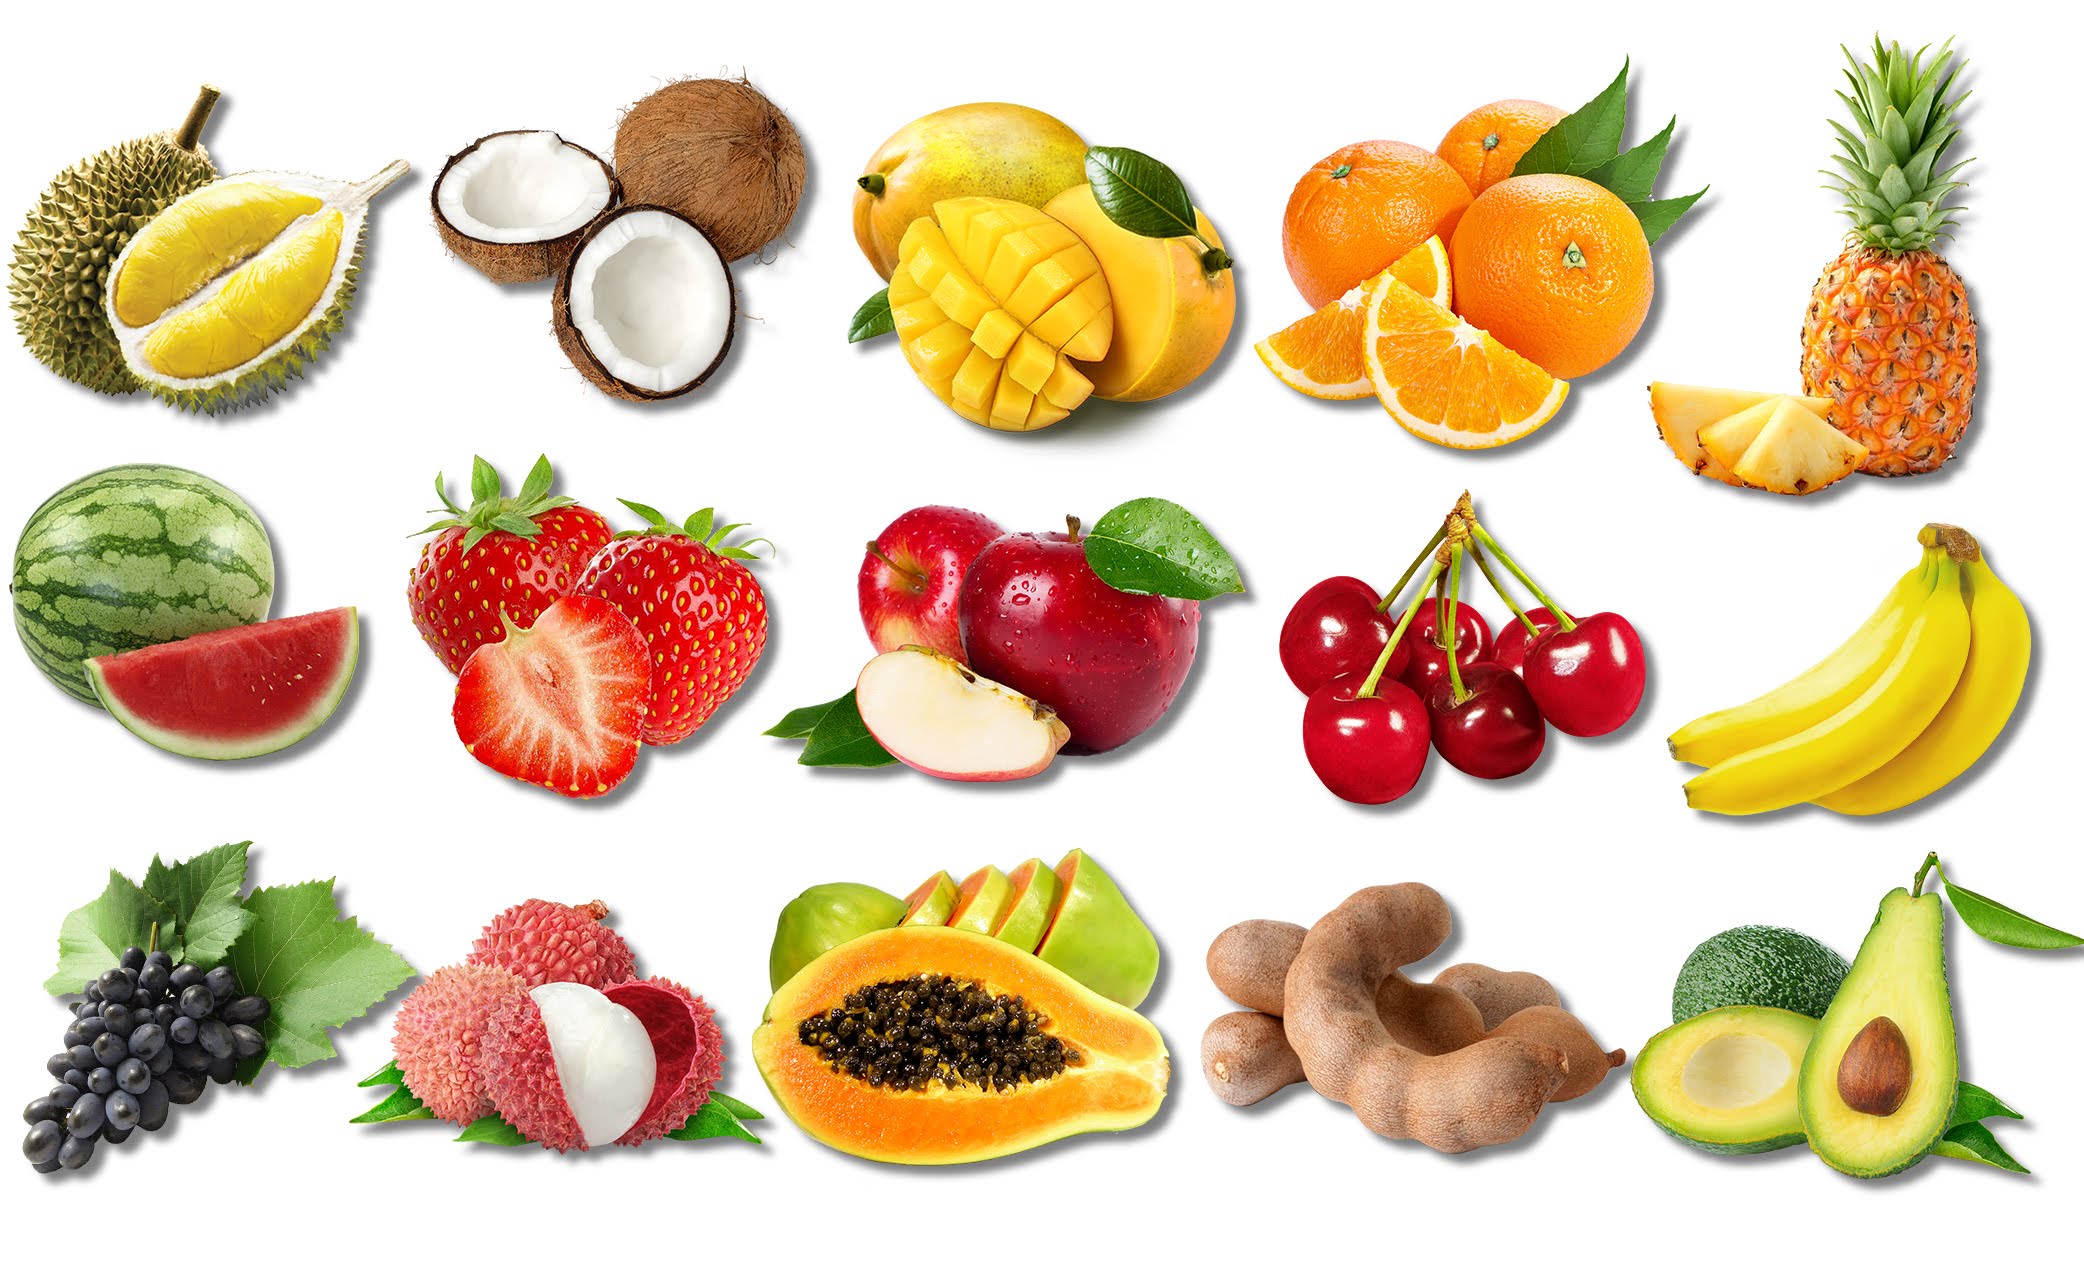 Sử dụng trái cây là một tuyệt chiêu ăn uống tăng cơ cần thiết.